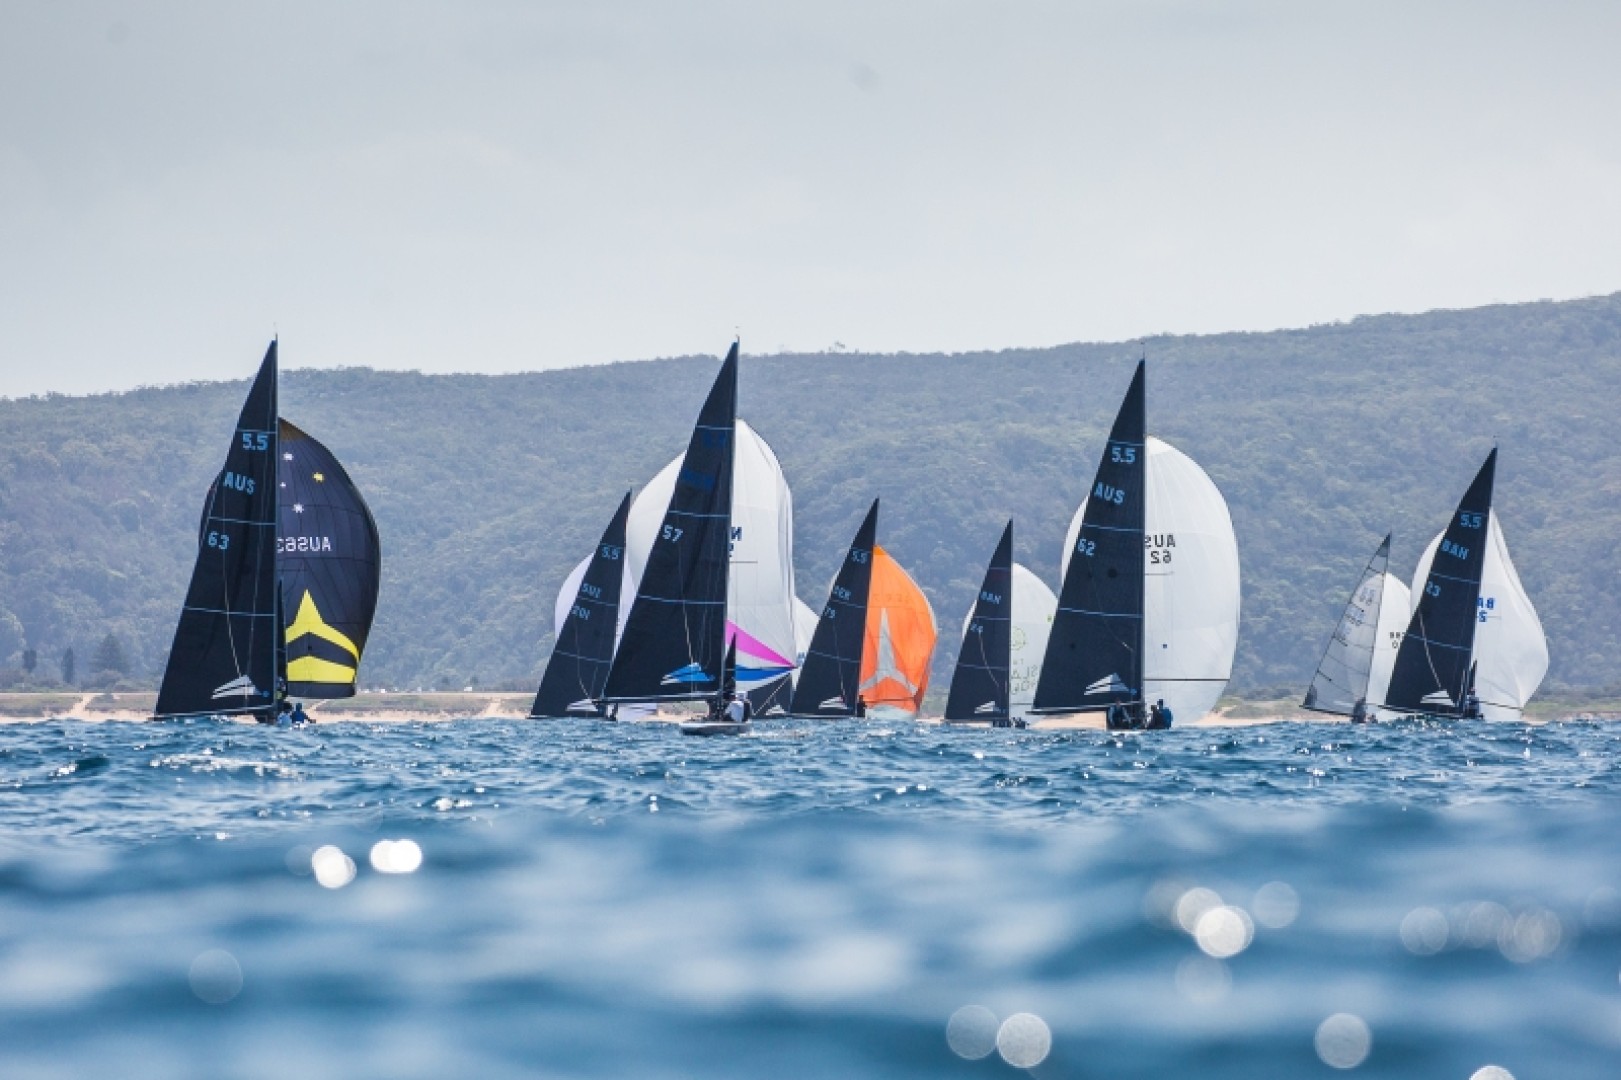 La flotta dei 5.5 riunita a Porto Cervo per disputare 10 giorni di regate, incluso il Campionato Mondiale.

﻿Crediti foto: Robert Deaves